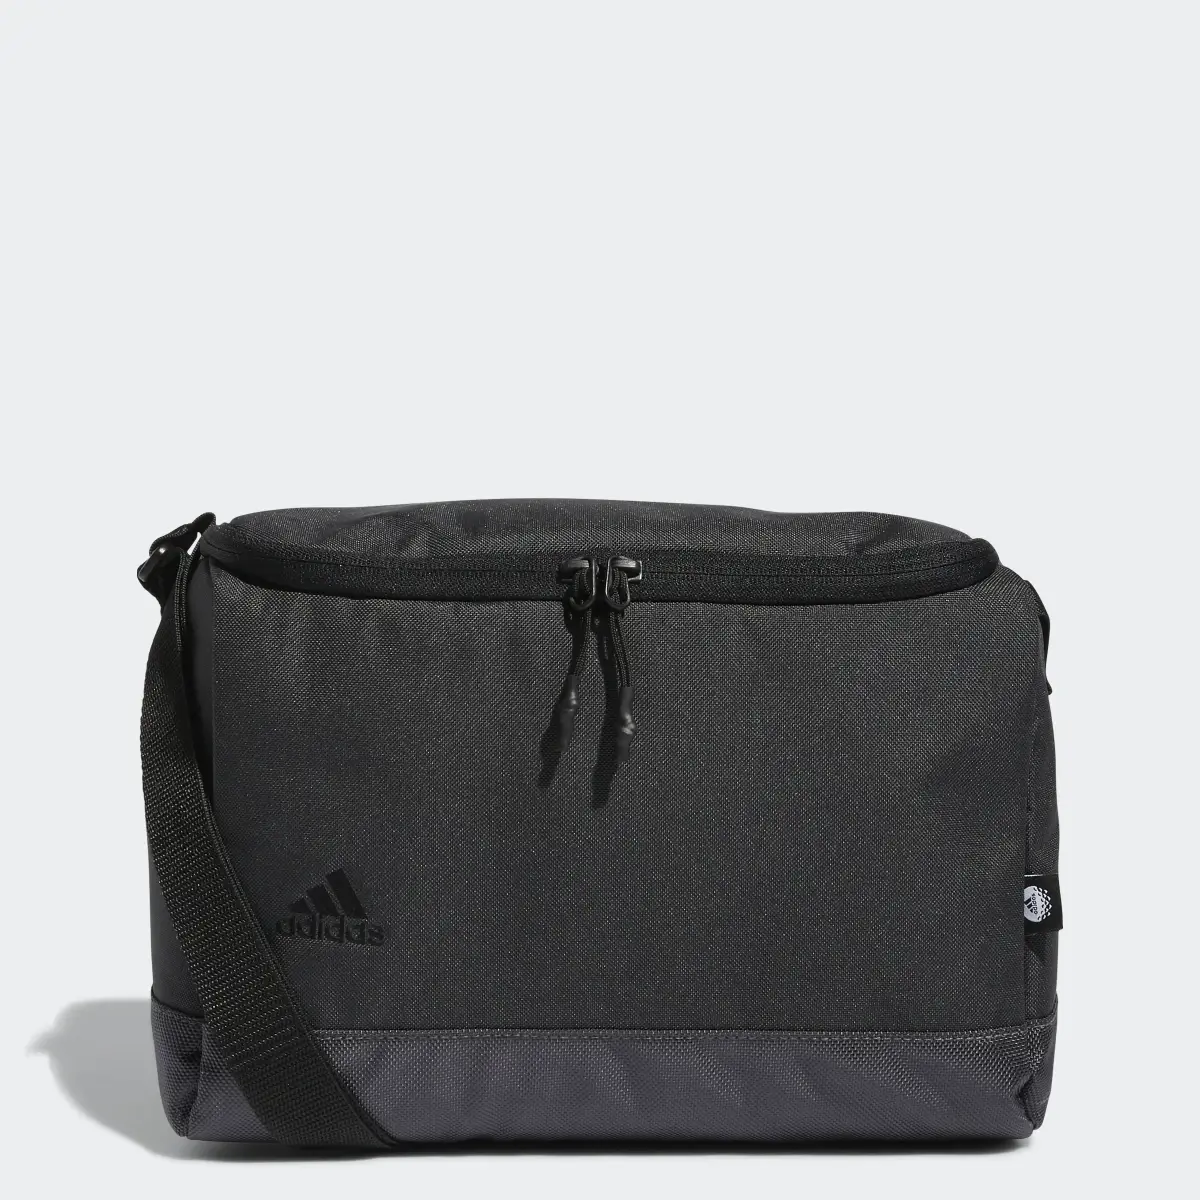 Adidas Golf Cooler Bag. 1